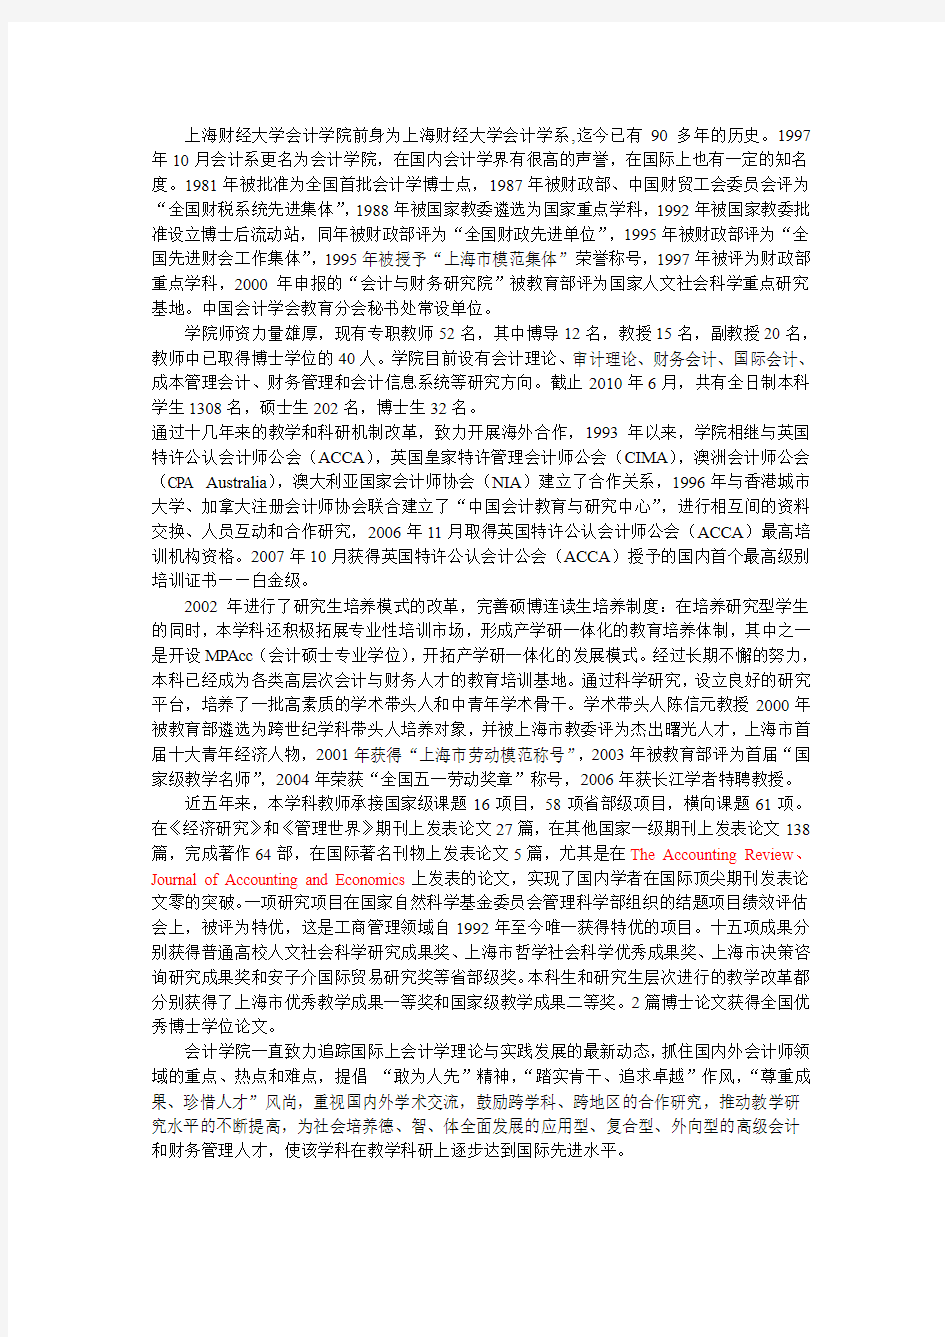 上海财经大学 公开发表的论文